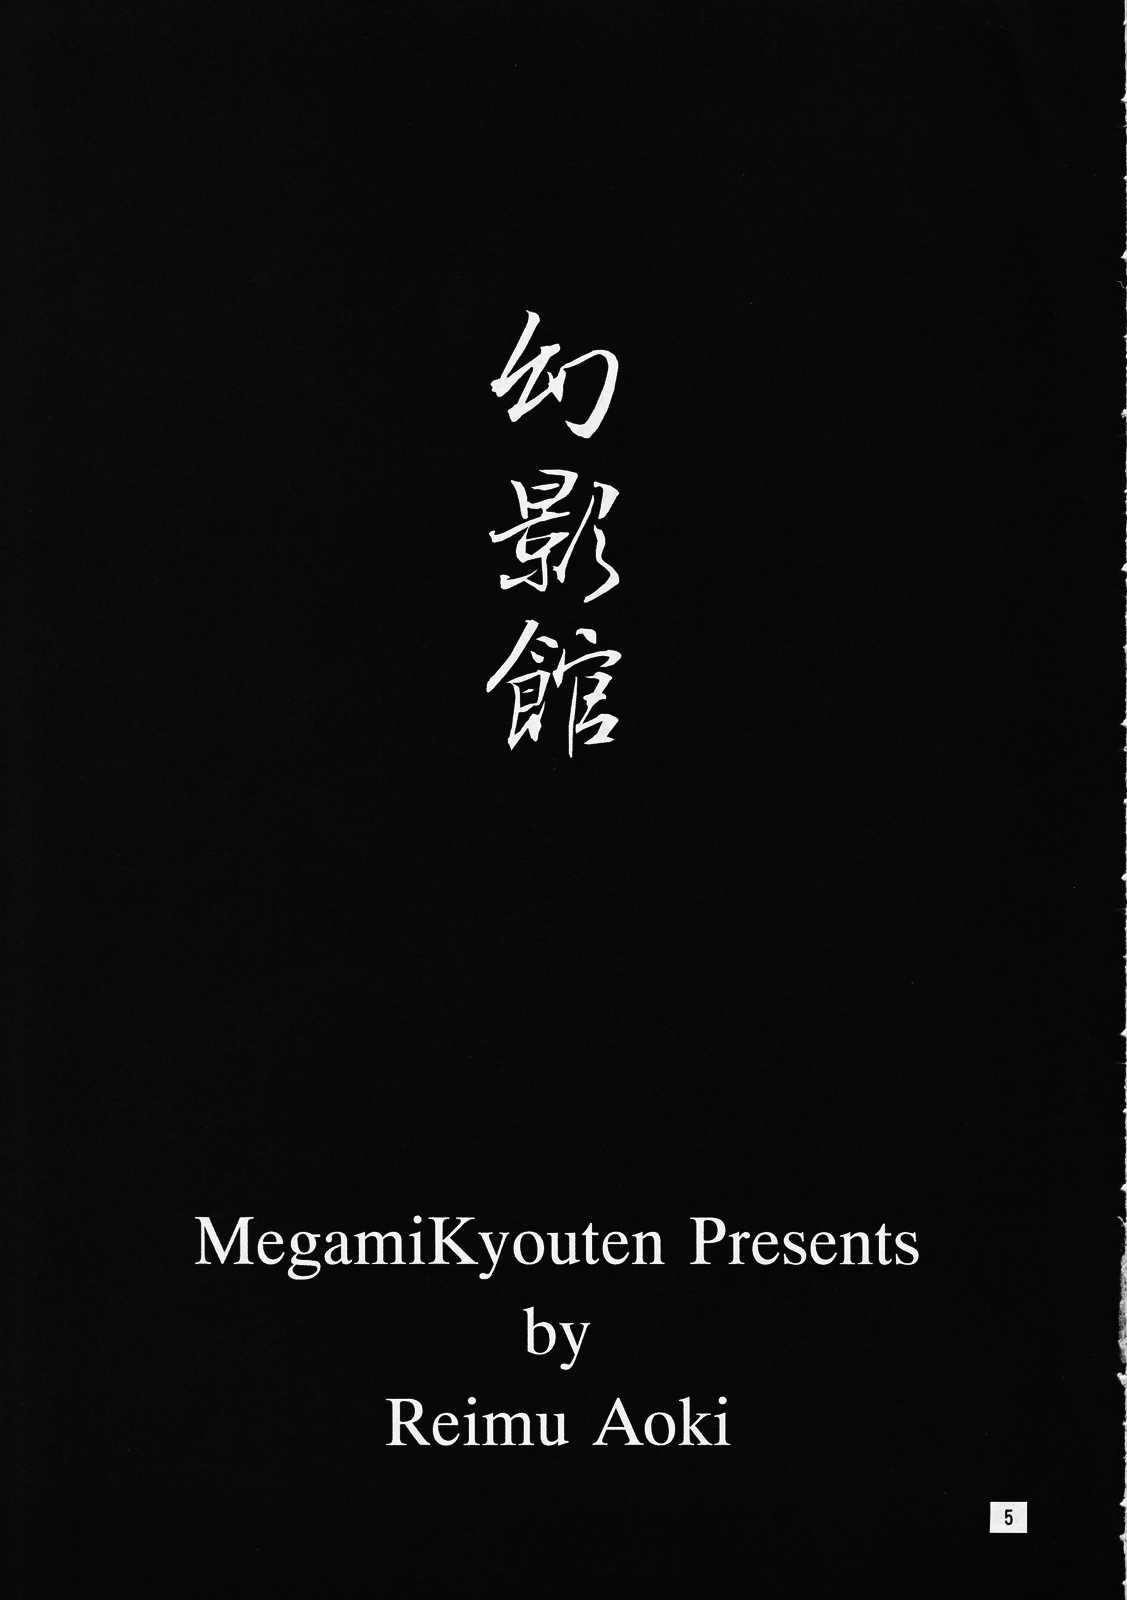 [Megami Kyouten] geneikan ex version [女神教典] 幻影館 EX version